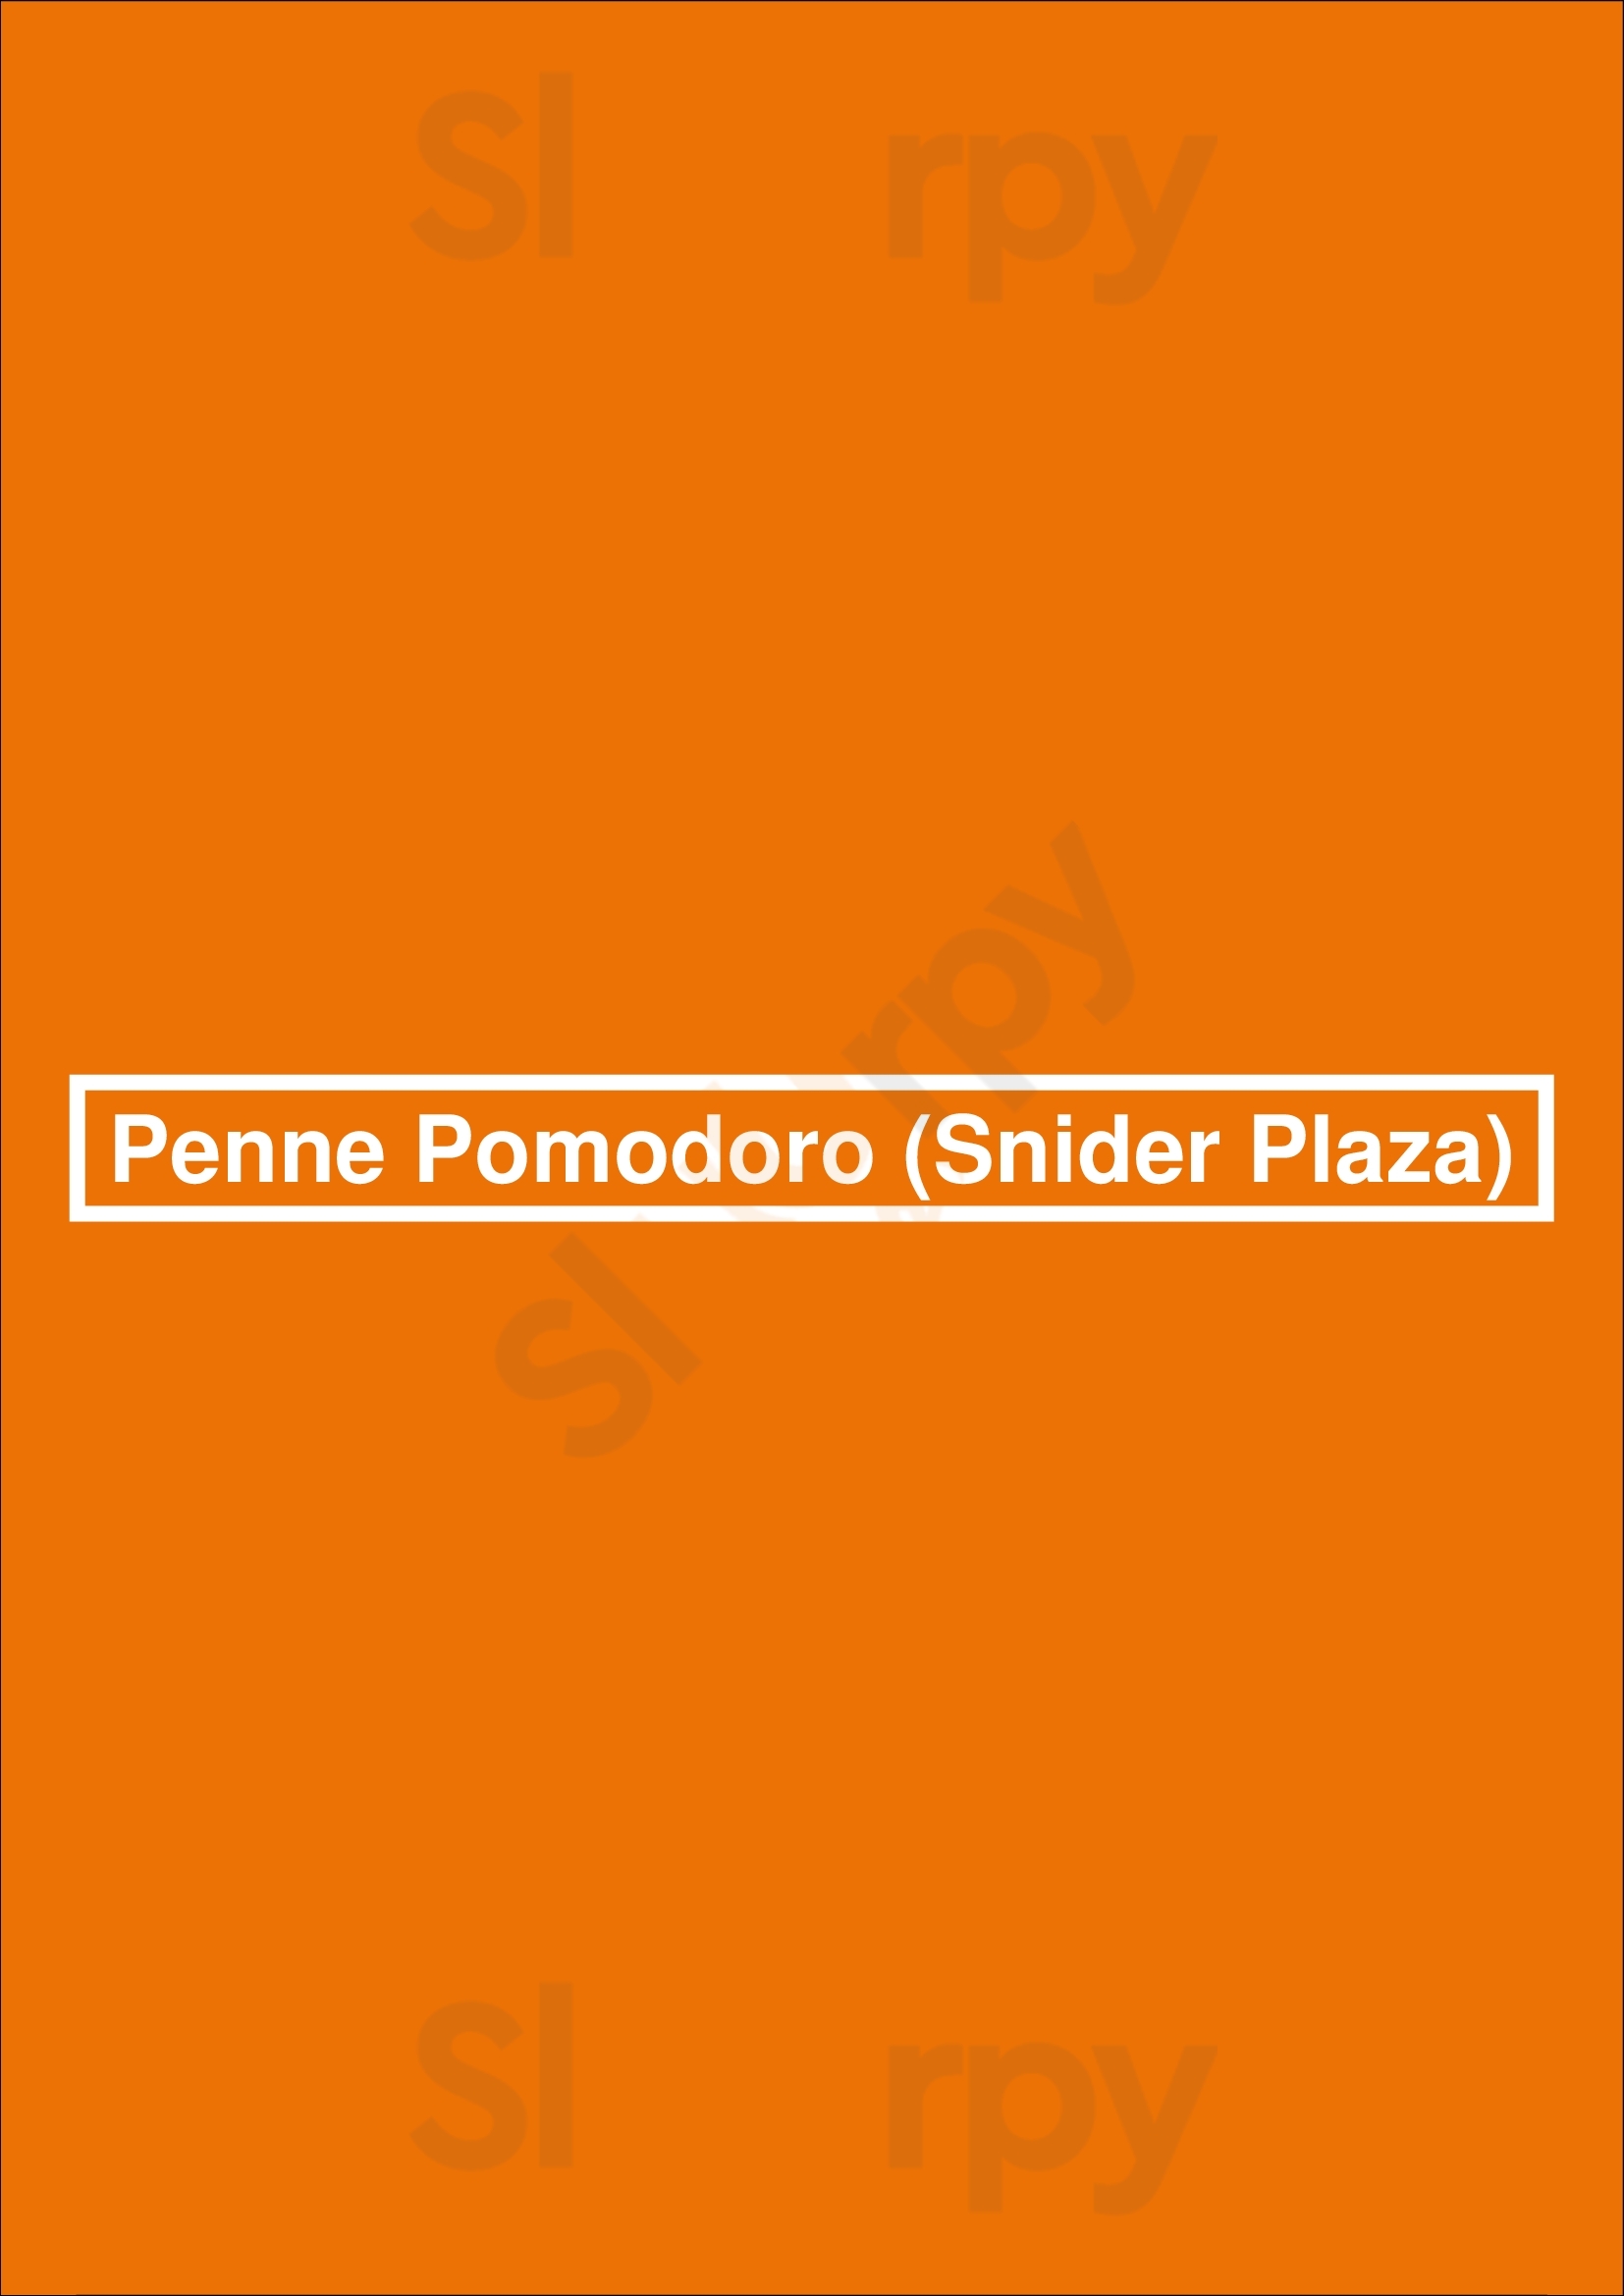 Penne Pomodoro (snider Plaza) Dallas Menu - 1